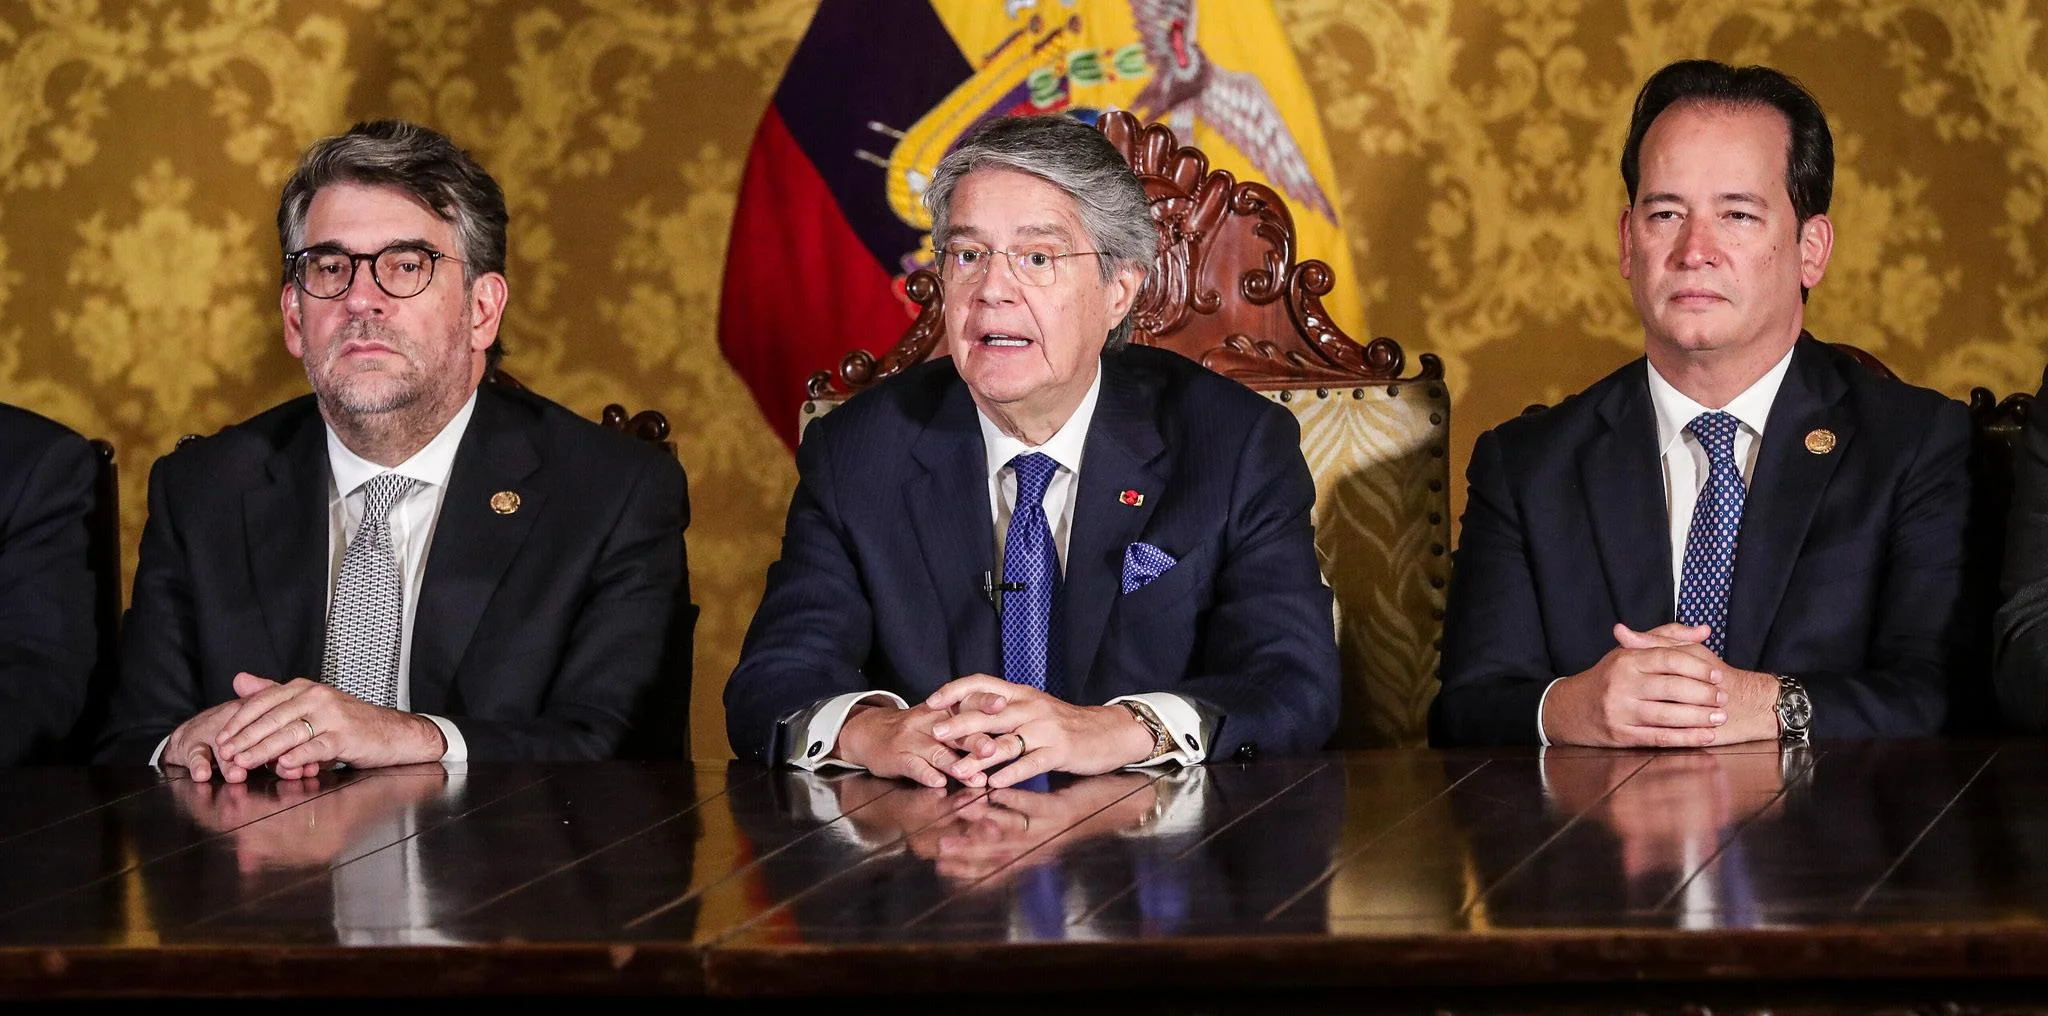 El expresidente Guillermo Lasso junto con dos de sus ministros el día que decretó la muerte cruzada.